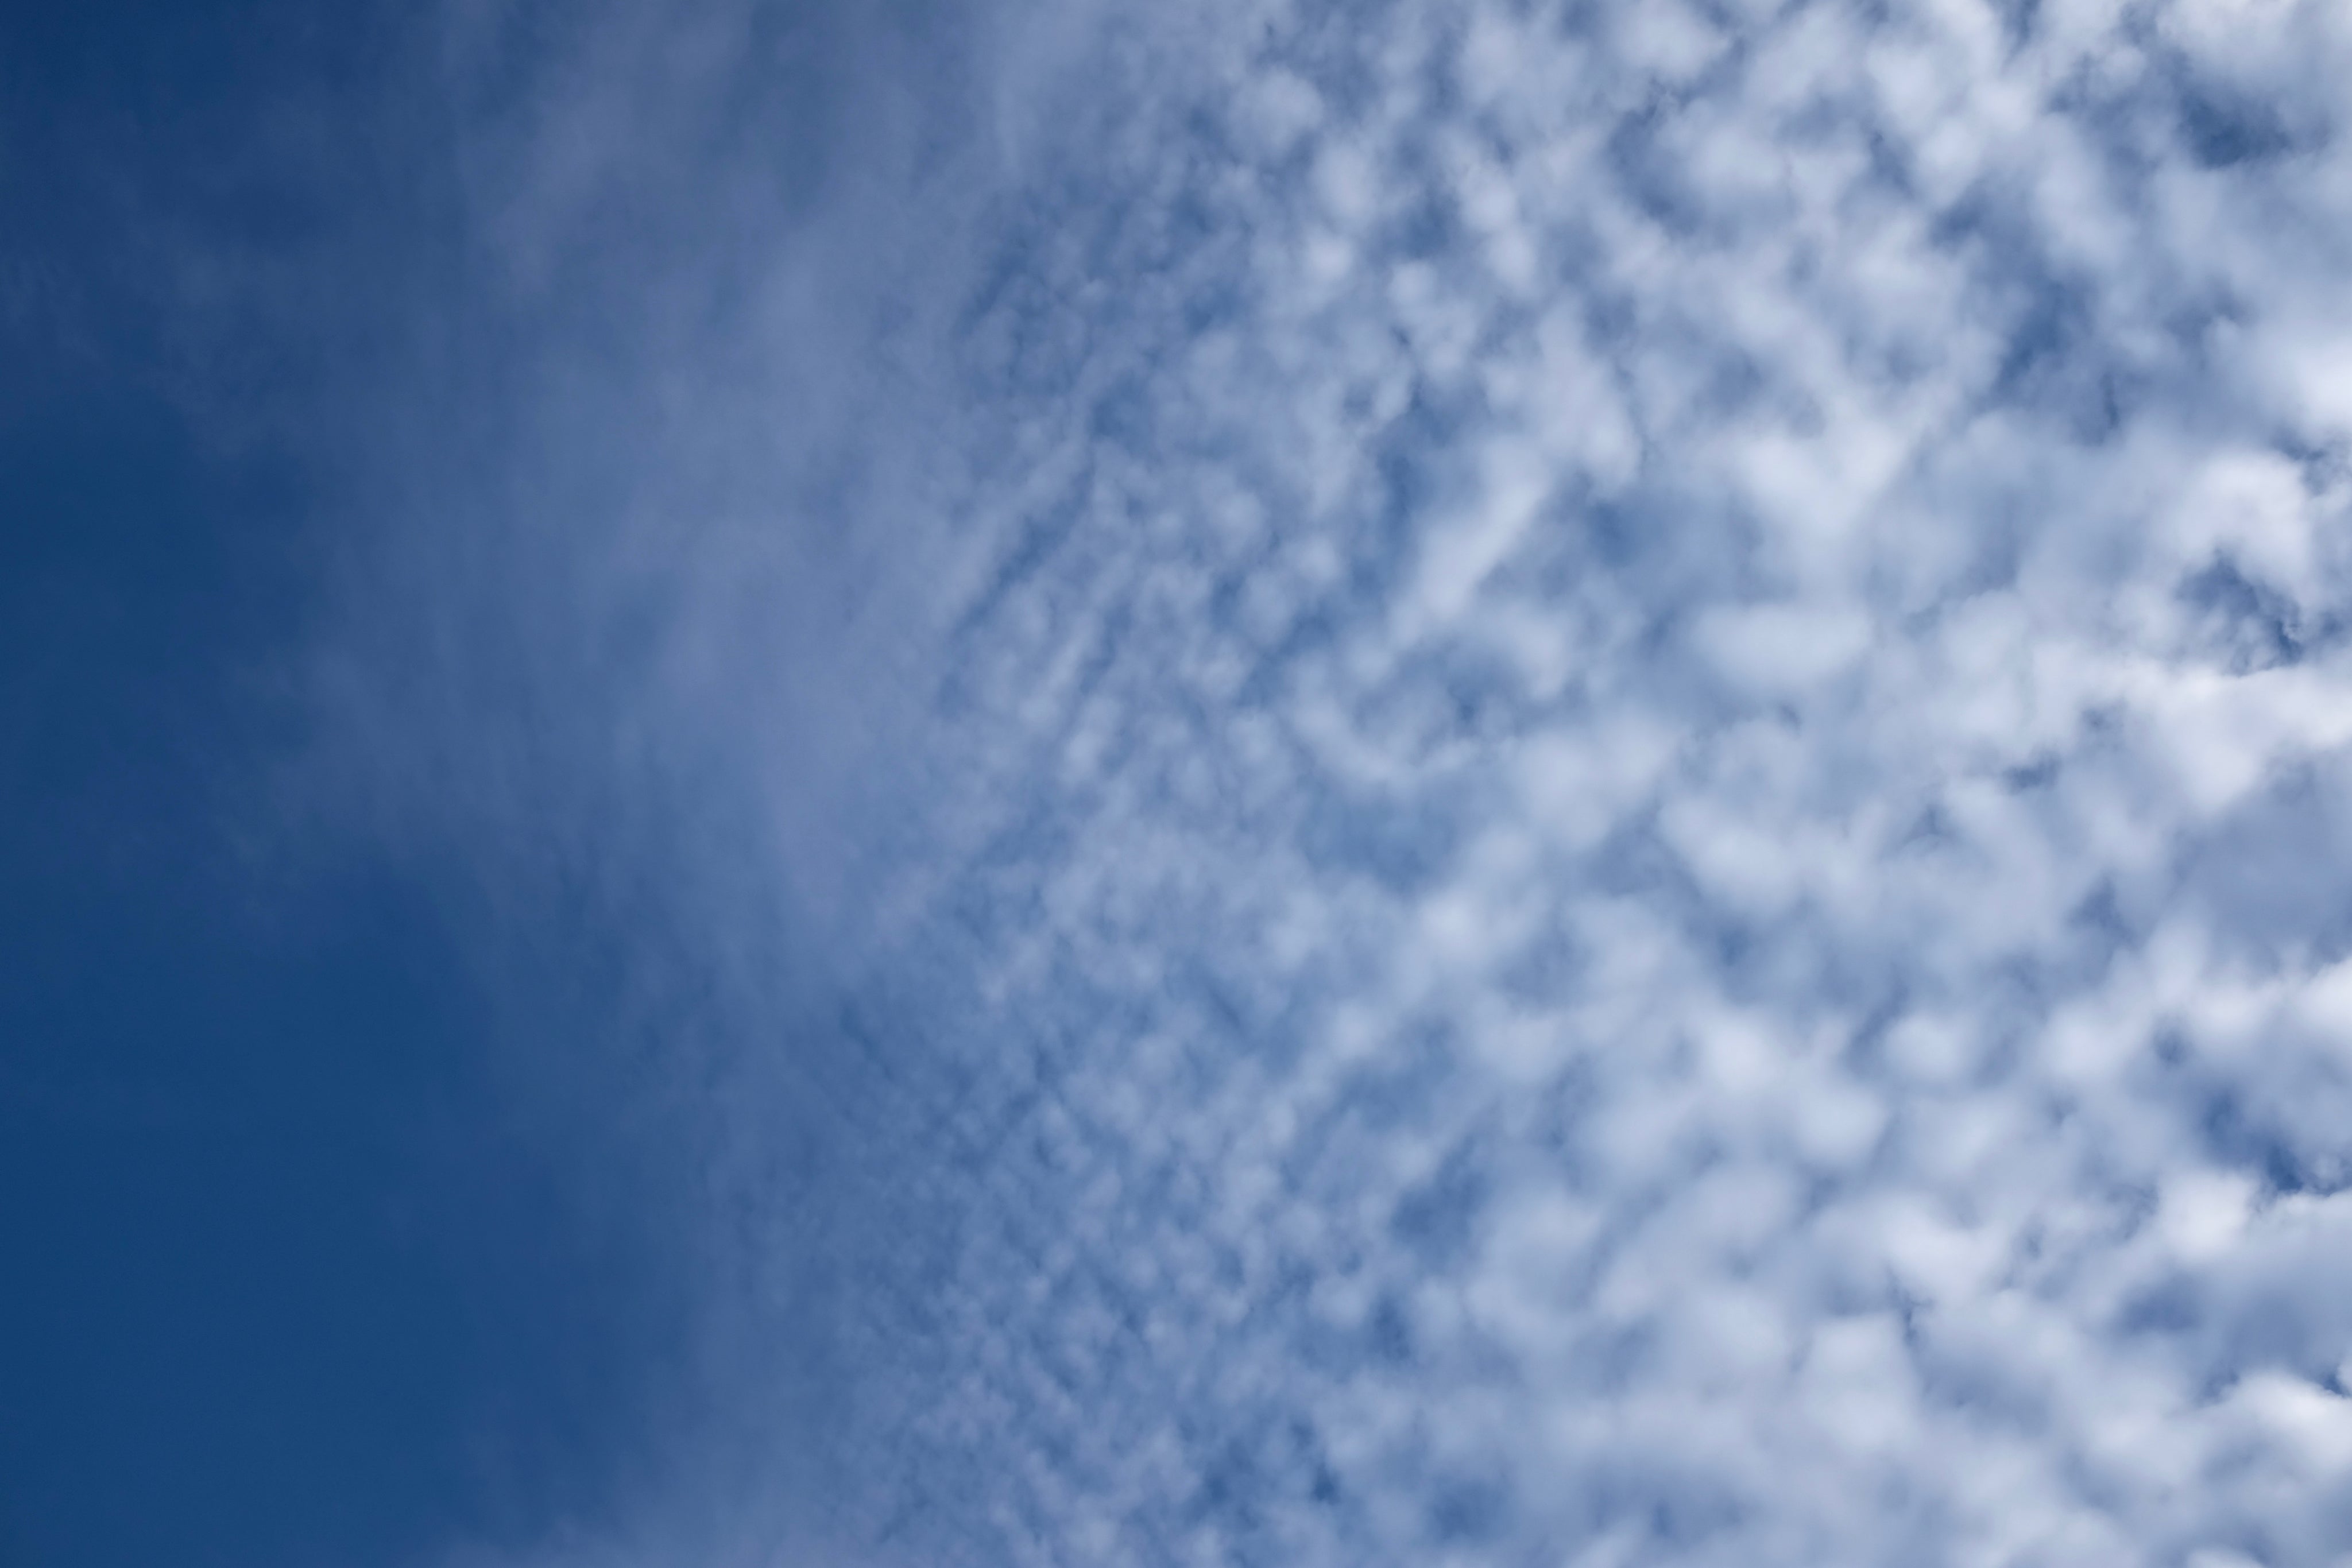 thin-cloud-pattern-in-sky.jpg